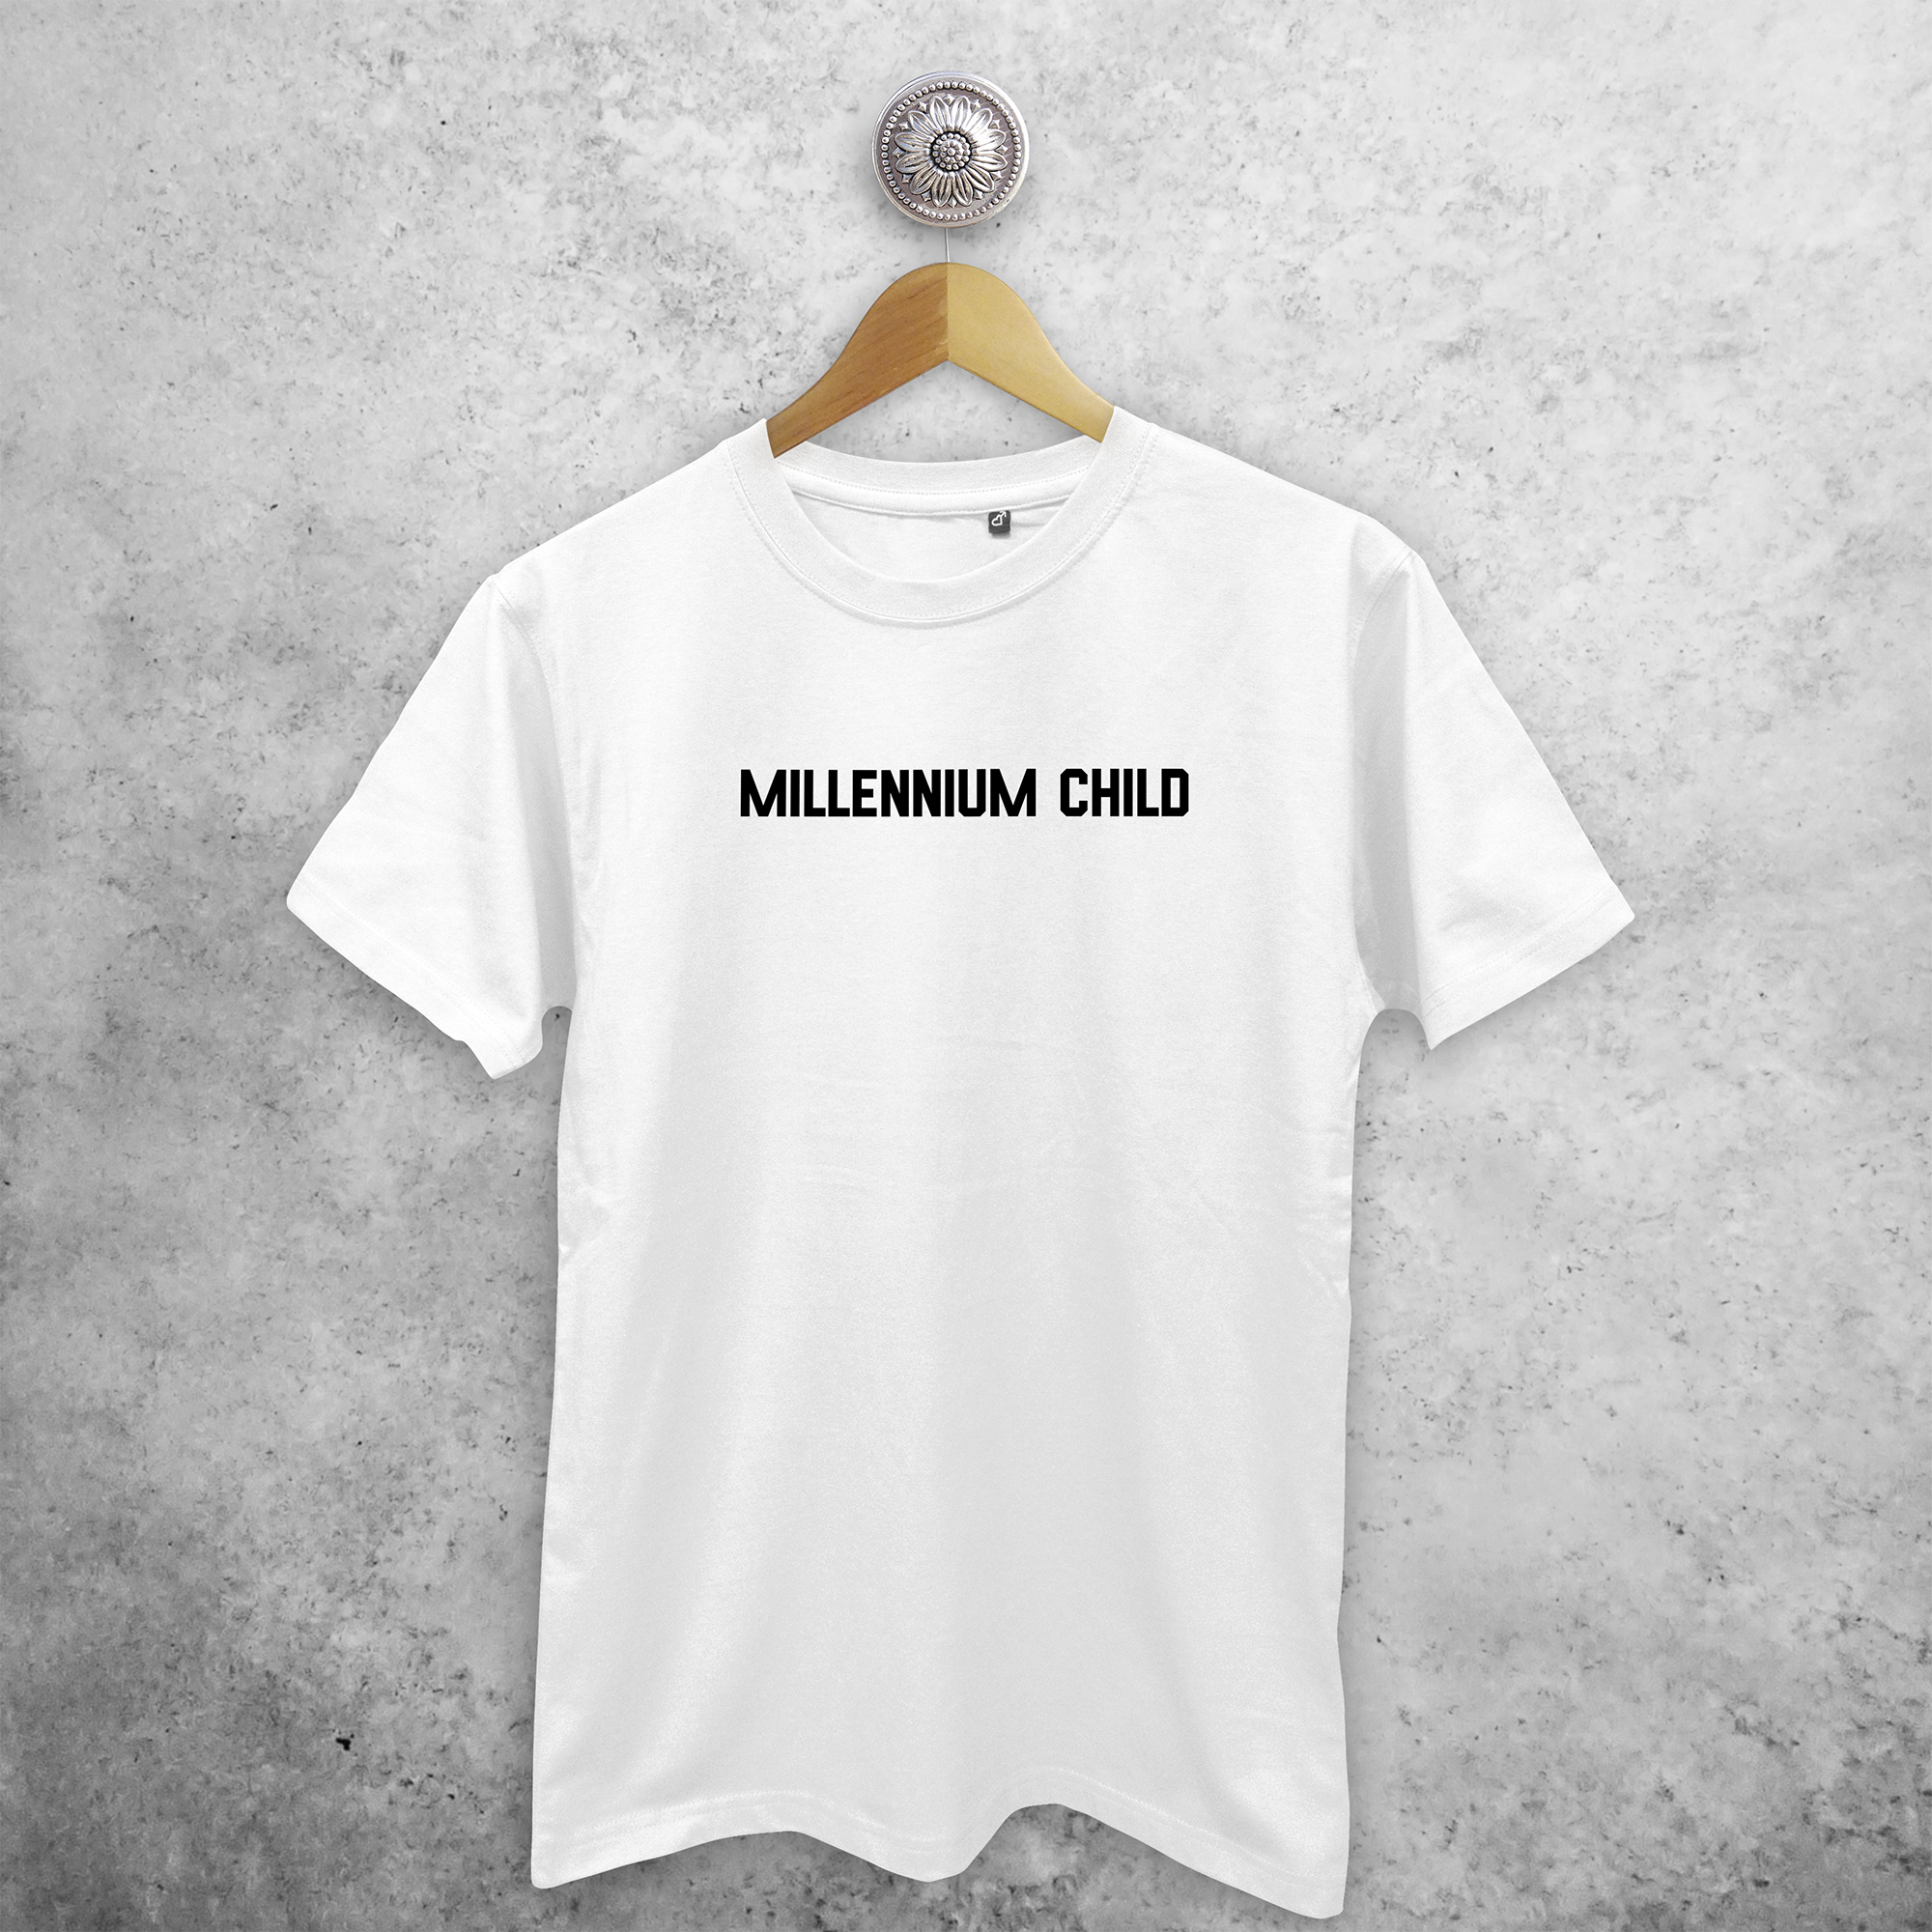 'Millennium child' volwassene shirt